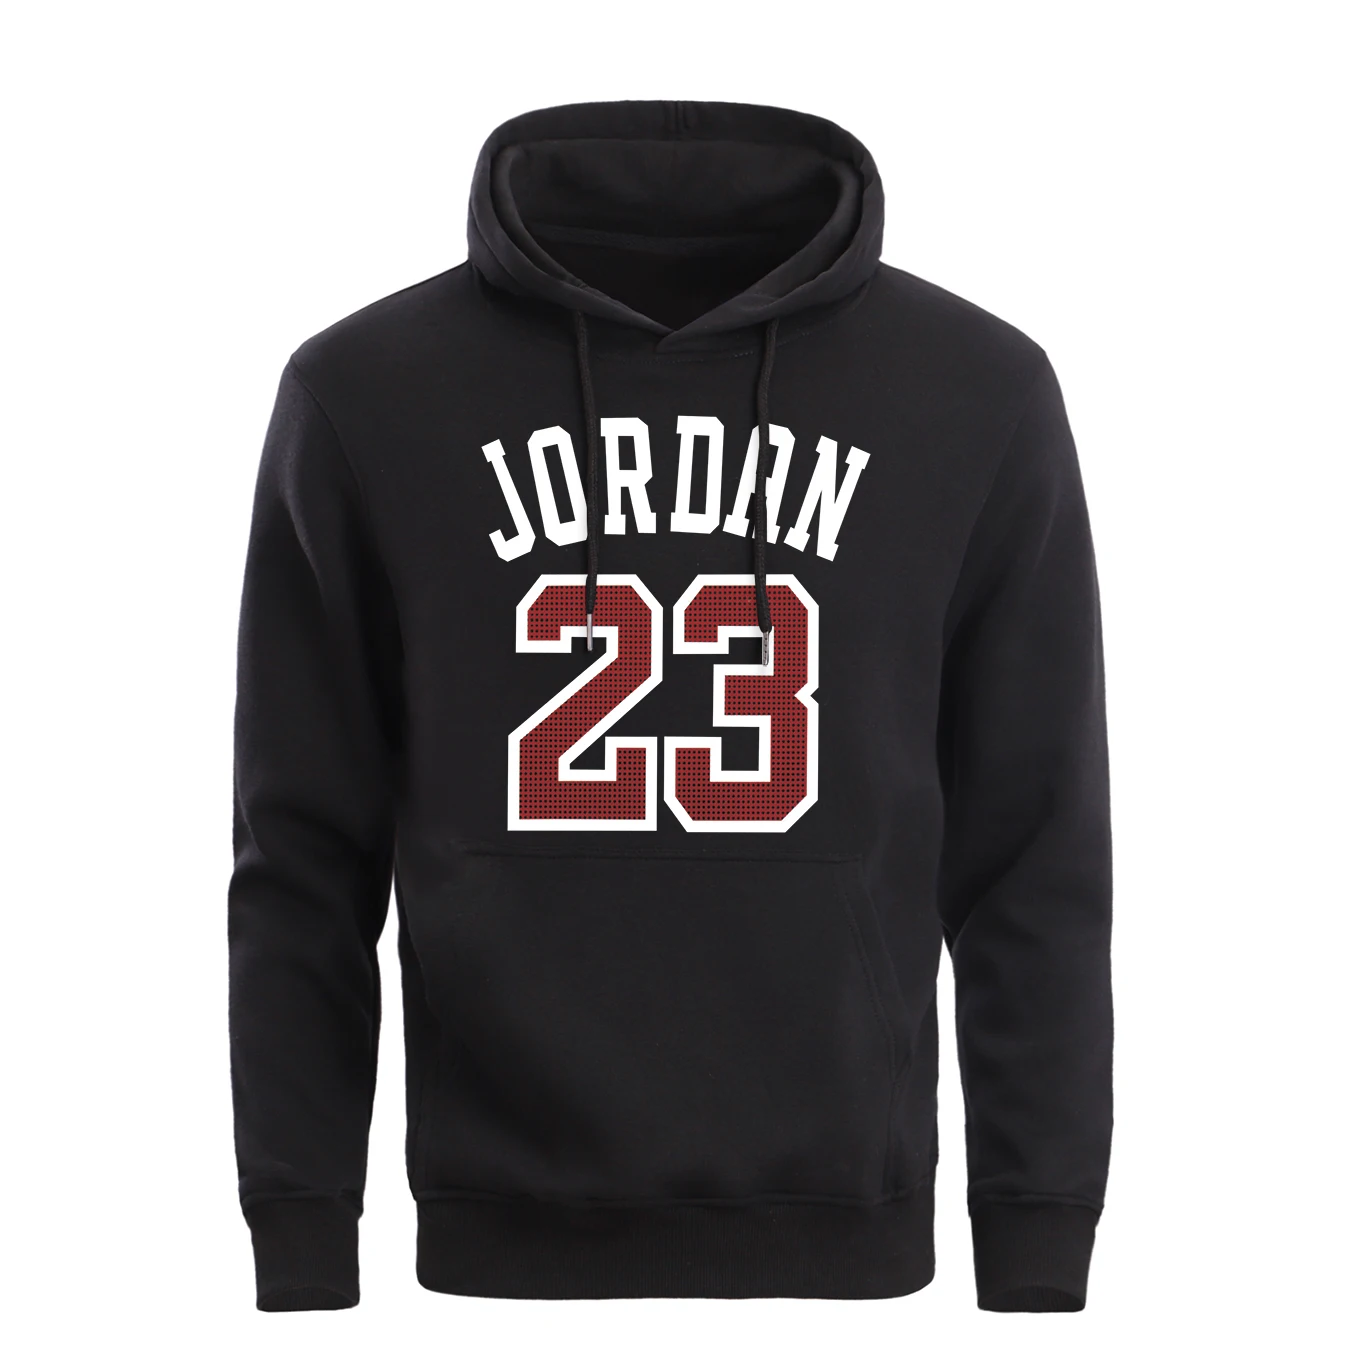 Jordan 23, баскетбольные брендовые толстовки, мужские спортивные толстовки,, весна-осень, повседневные, с капюшоном, из флиса, черные, темно-серые, спортивная одежда